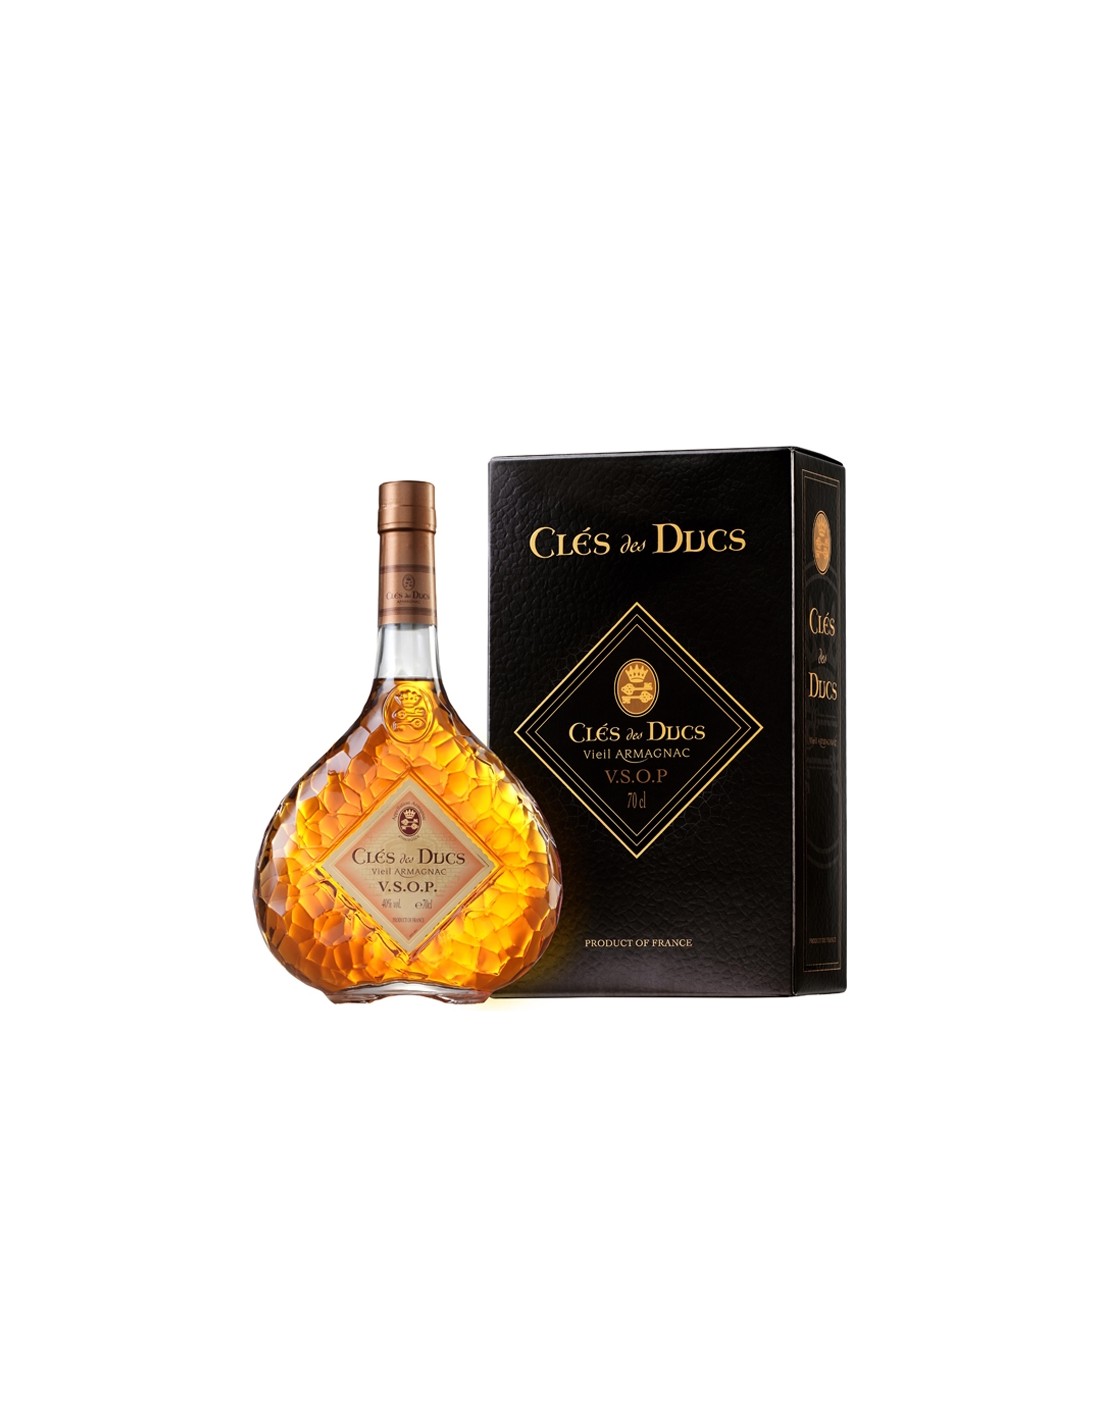 Brandy Armagnac Cles Des Ducs VSOP, 40% alc., 0.7L, Franta alcooldiscount.ro